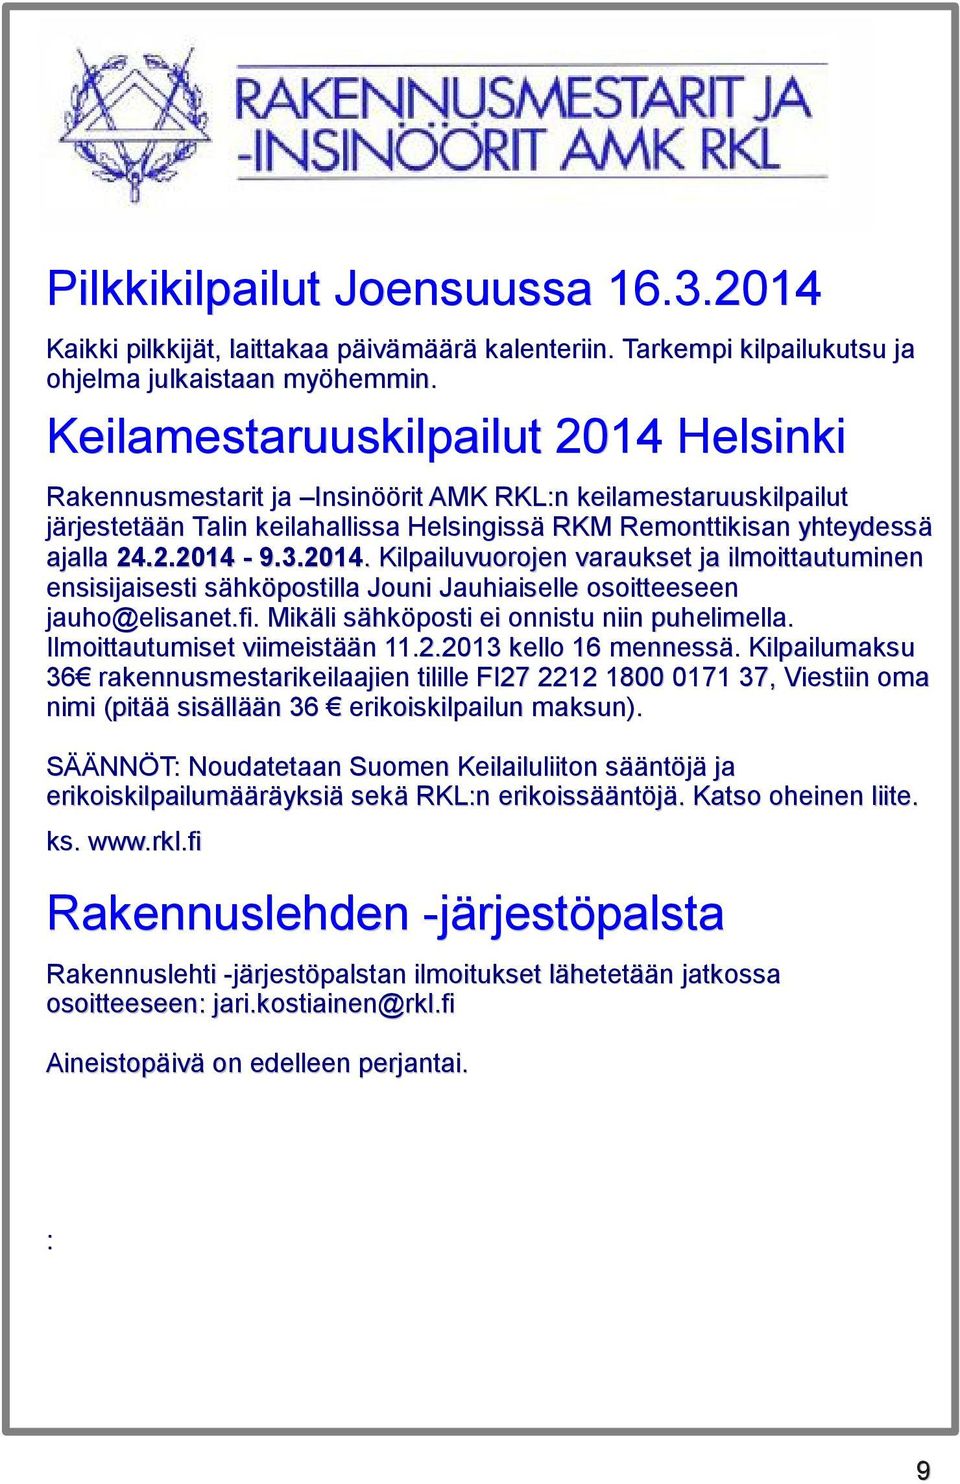 2014. 9.3.2014. Kilpailuvuorojen varaukset ja ilmoittautuminen ensisijaisesti sähköpostilla Jouni Jauhiaiselle osoitteeseen jauho@elisanet.fi. Mikäli sähköposti ei onnistu niin puhelimella.